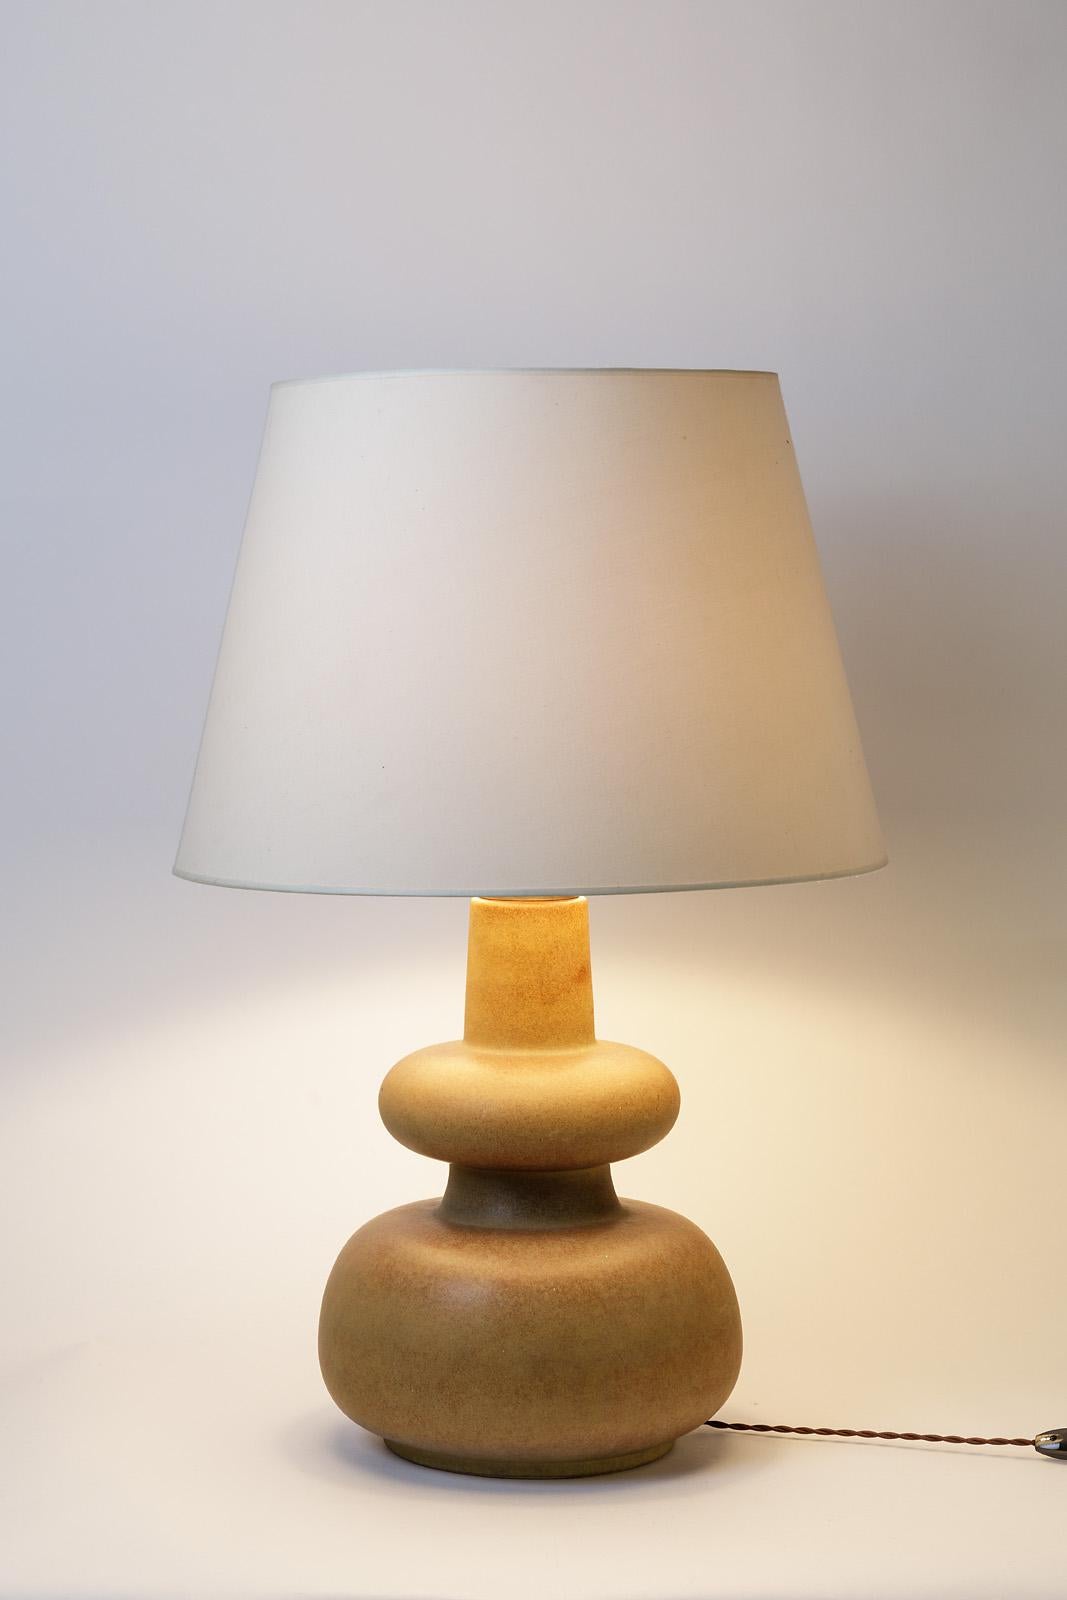 French Ceramic Table Lamp Mid Century Design circa 1970 (Keramik)